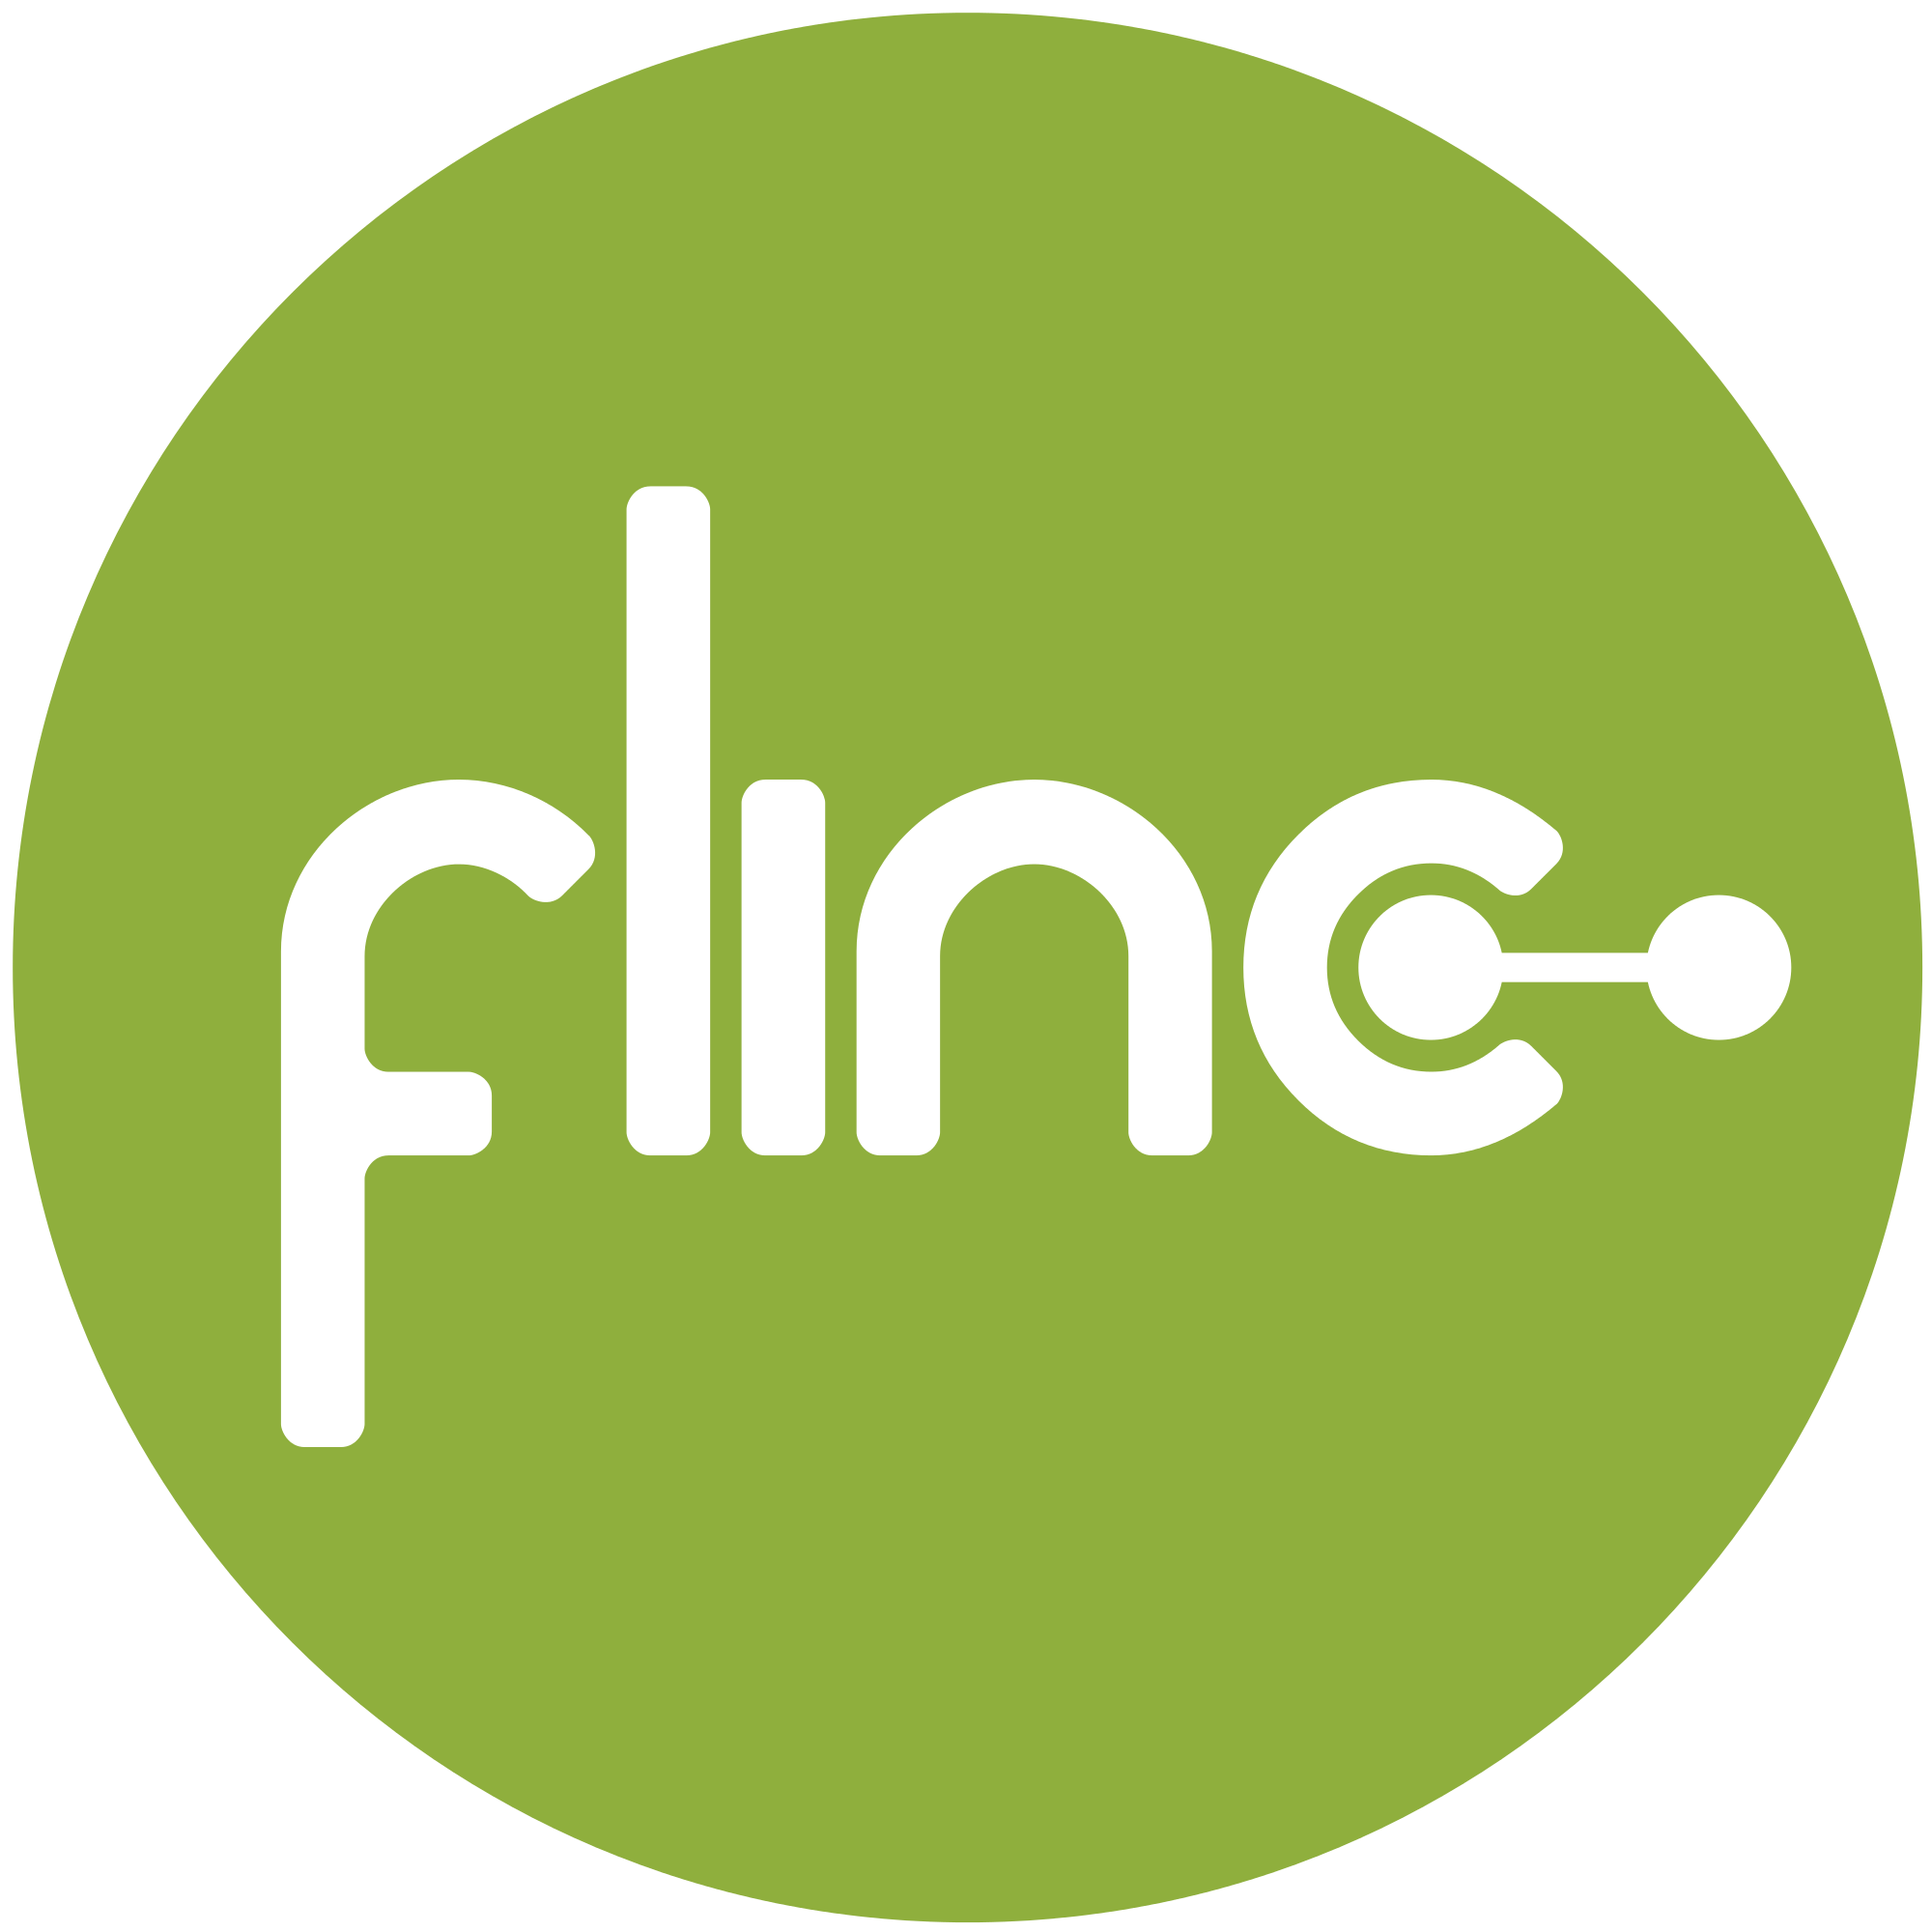 Flinc-logo2013.svg